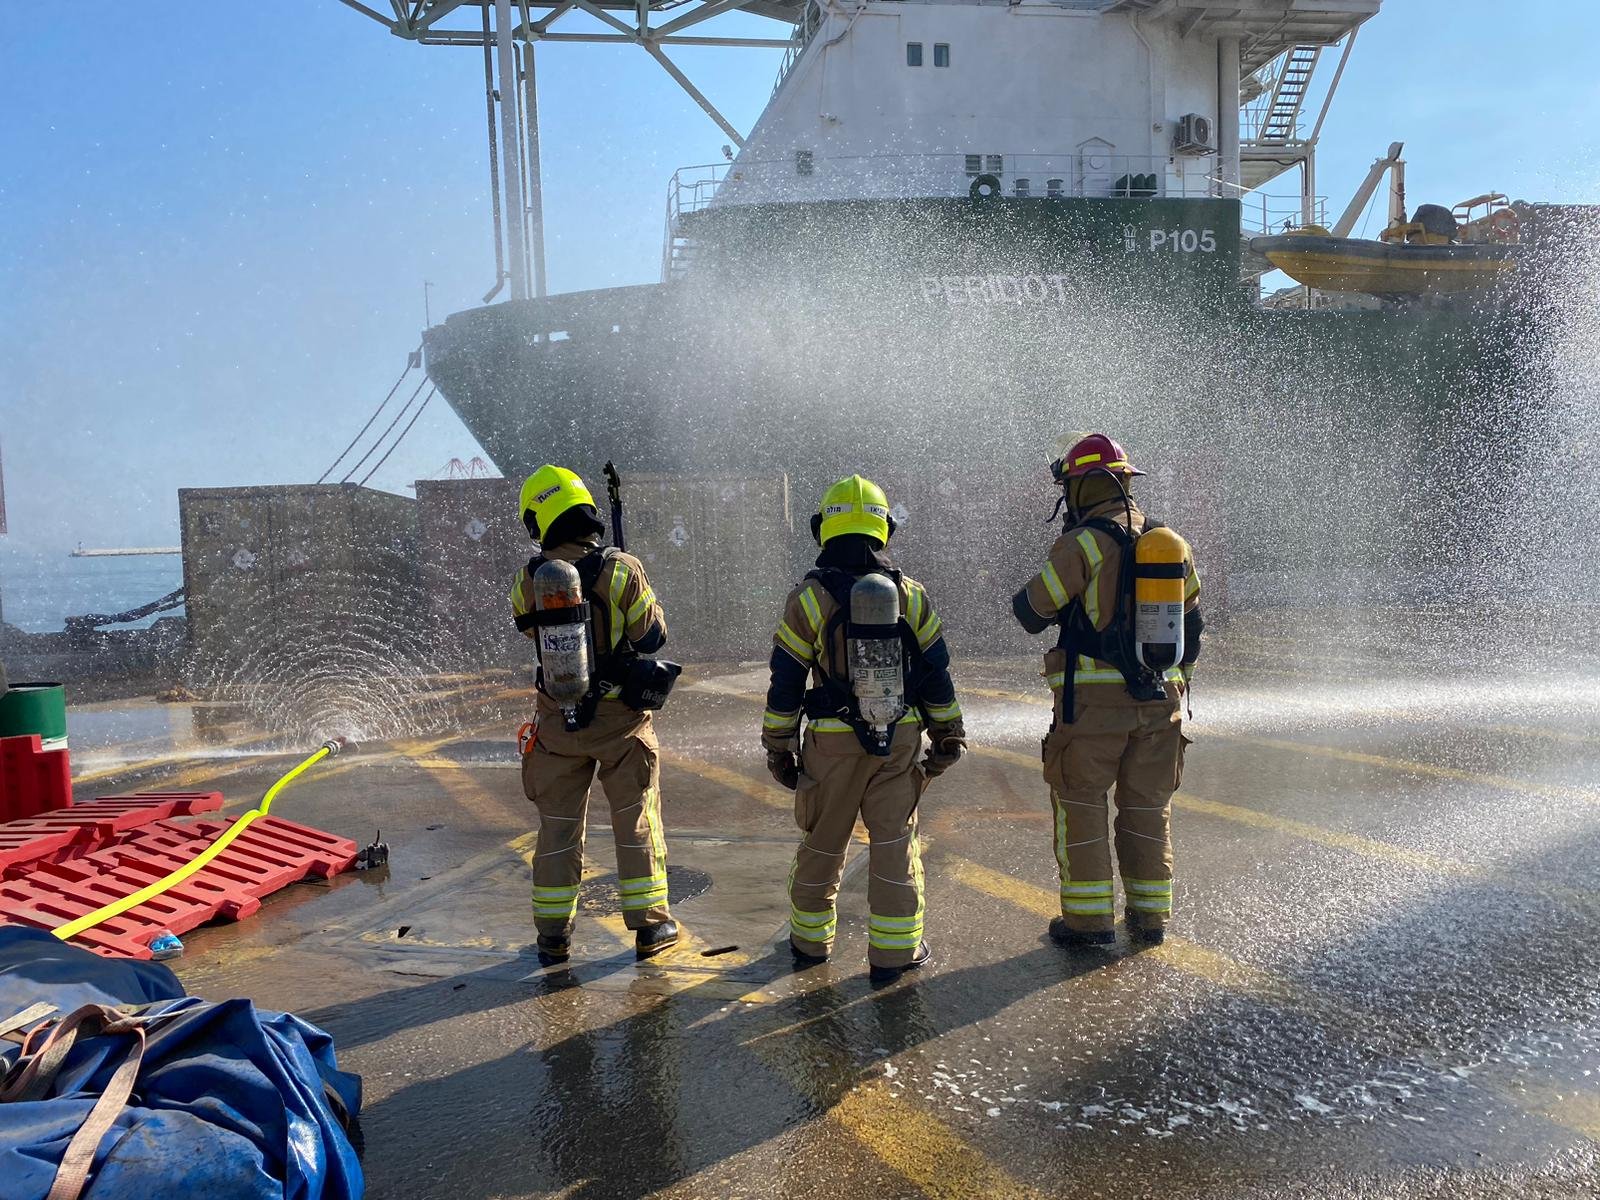 تسرب مواد خطرة وسامة في ميناء حيفا-0